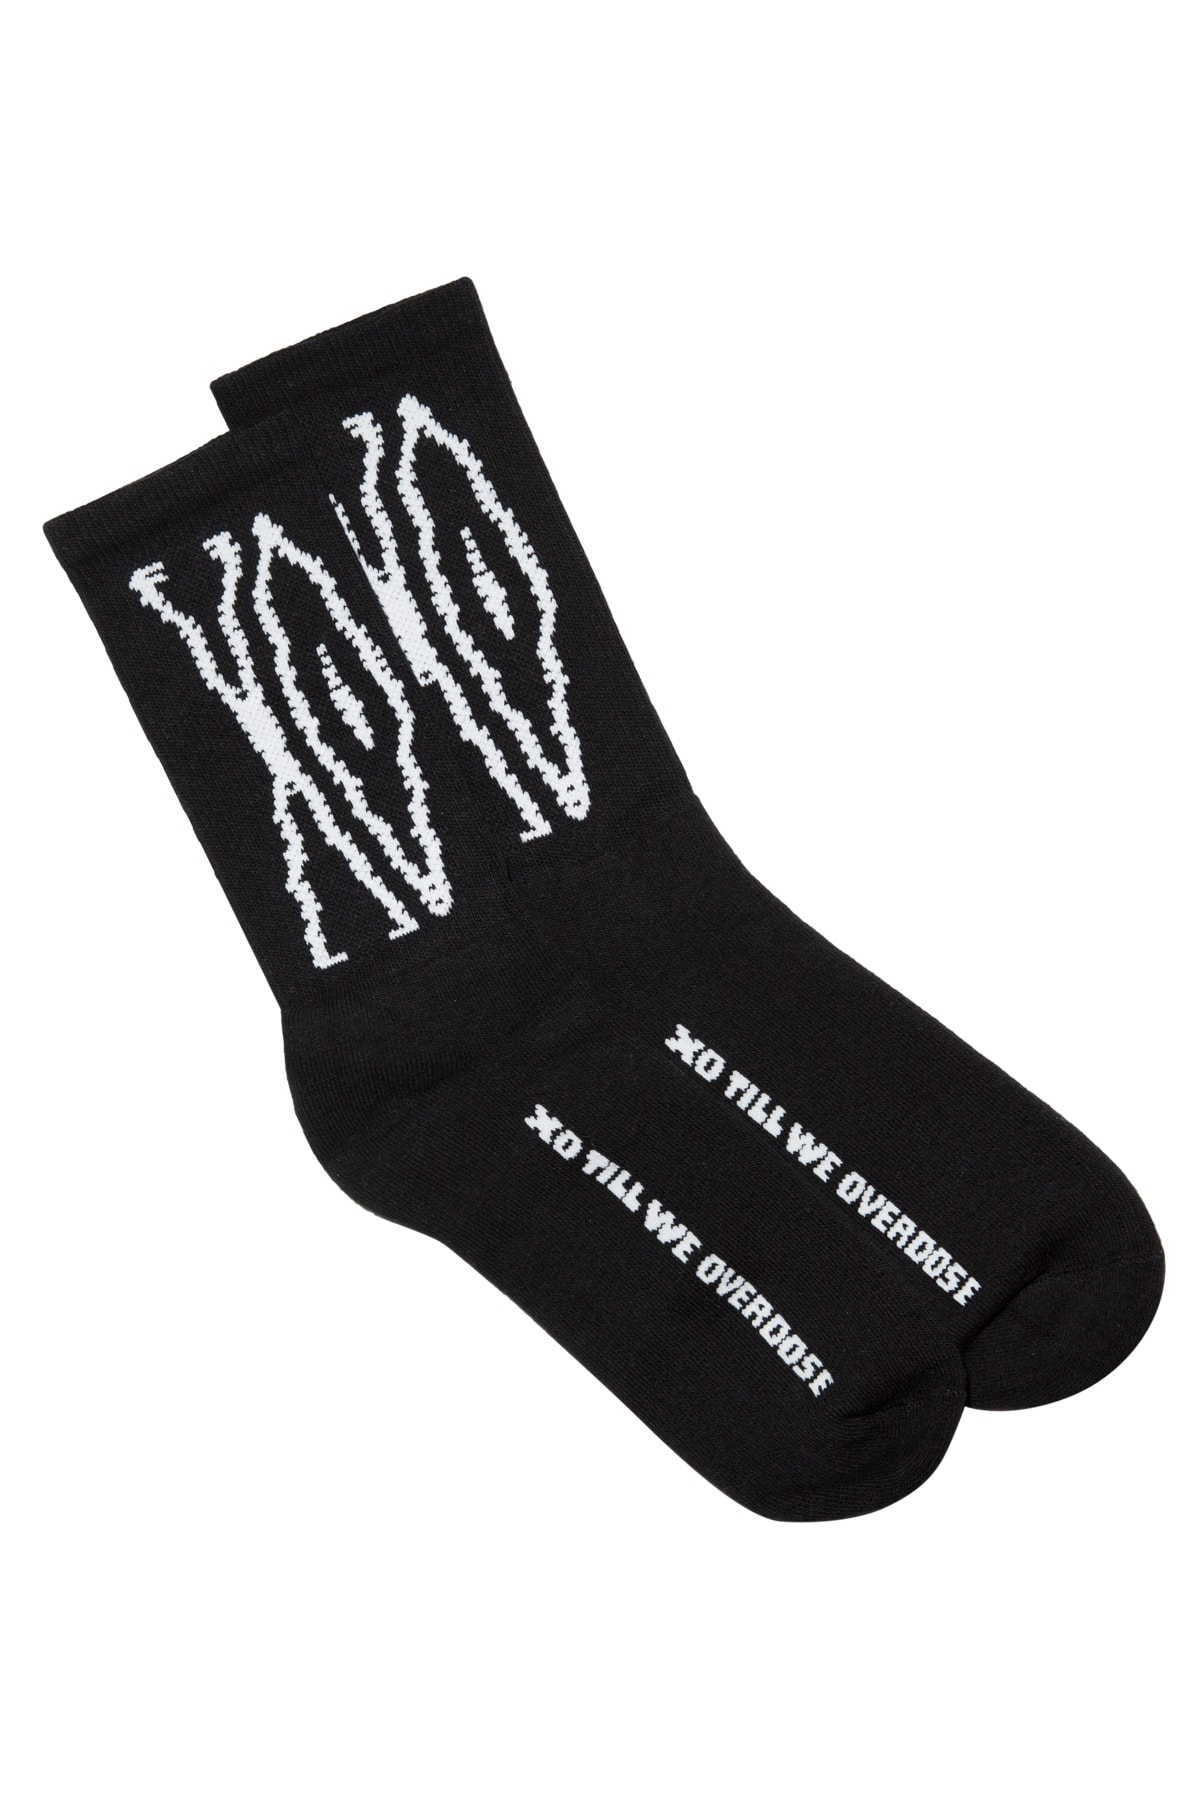 The Weeknd XO Tour Merch Release 004 Scanners Logo Socks Black